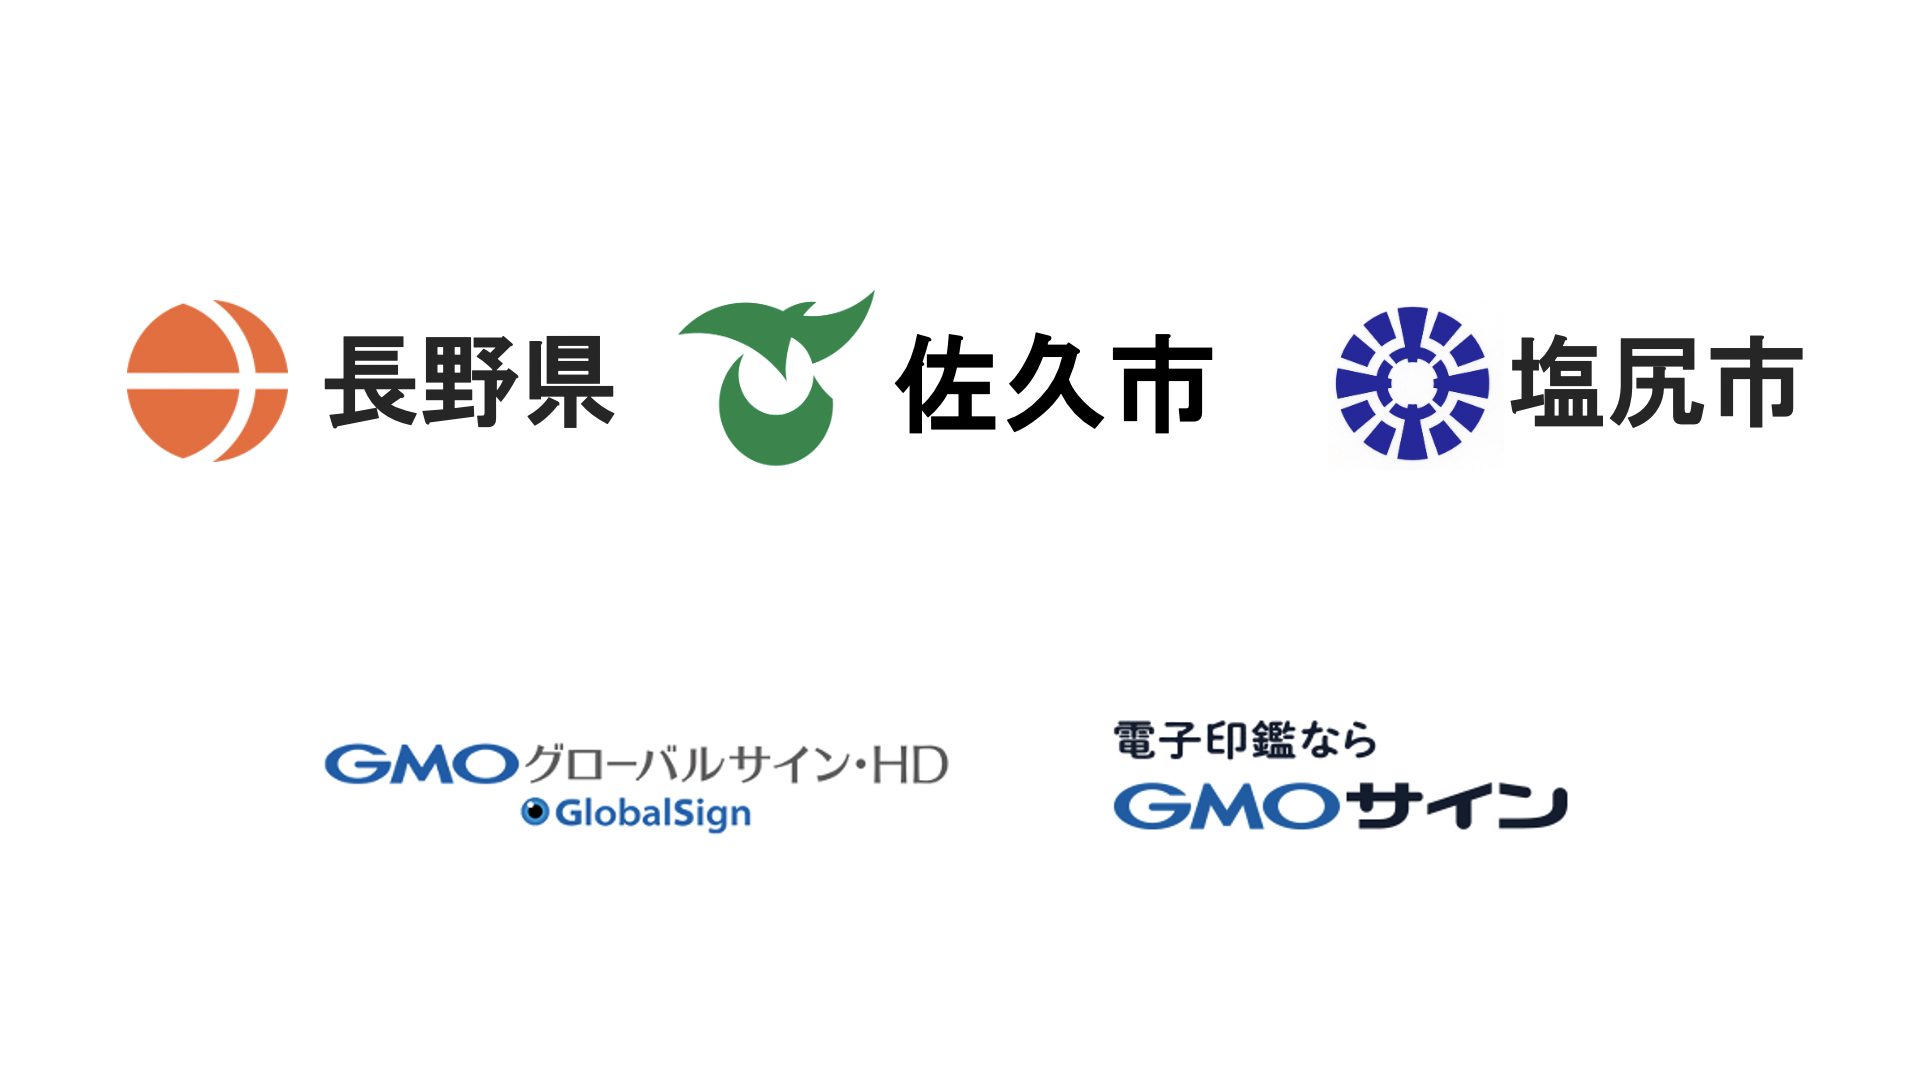 長野県、佐久市、塩尻市と電子契約サービス「電子印鑑GMOサイン」を活用した実証実験を開始